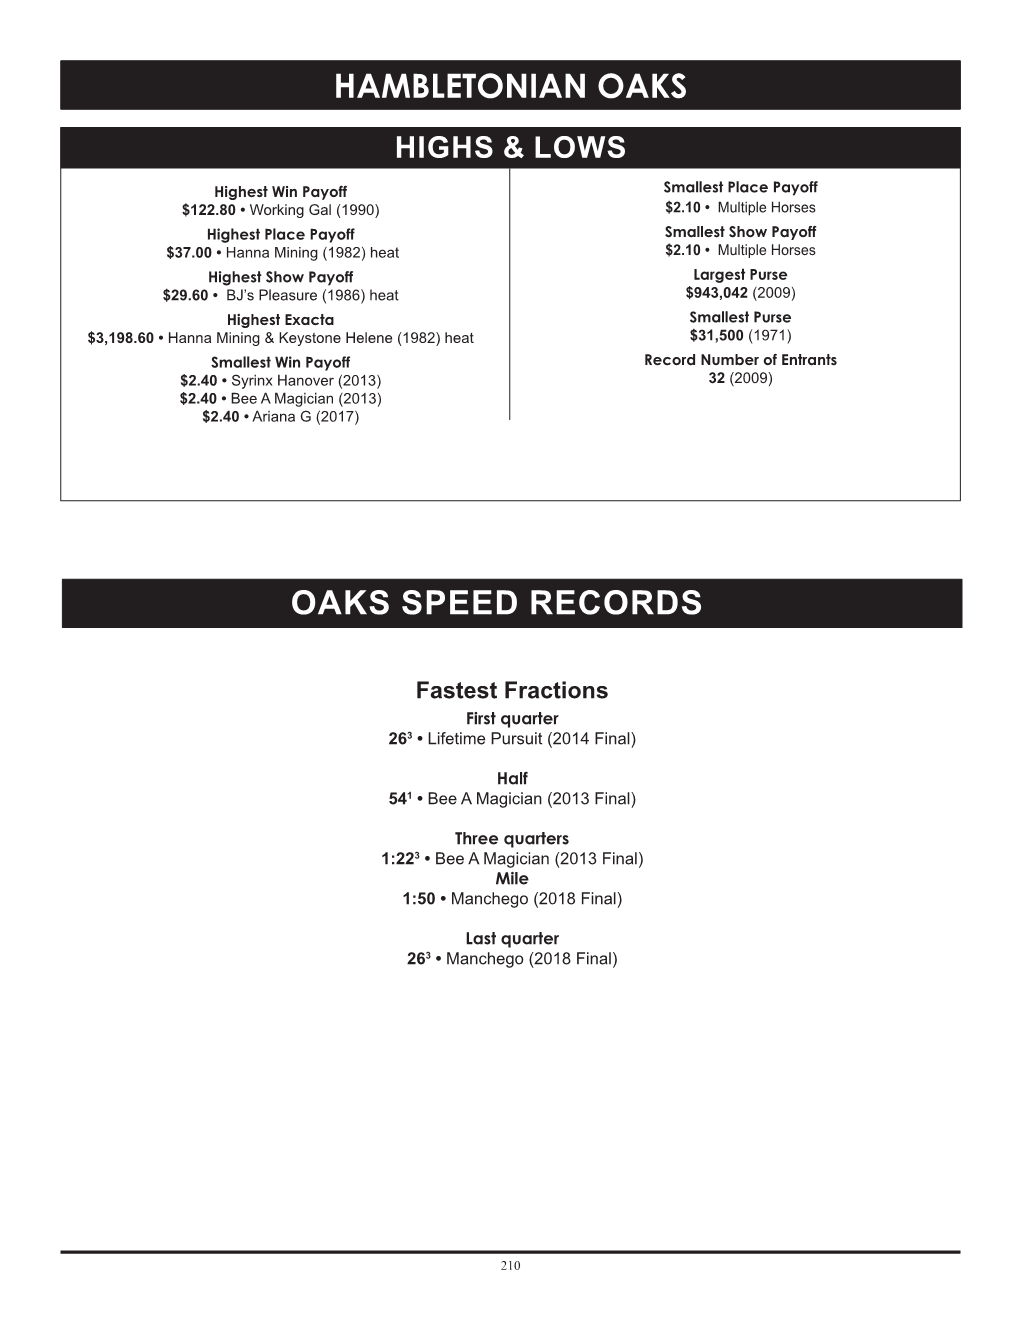 Hambletonian Oaks Oaks Speed Records